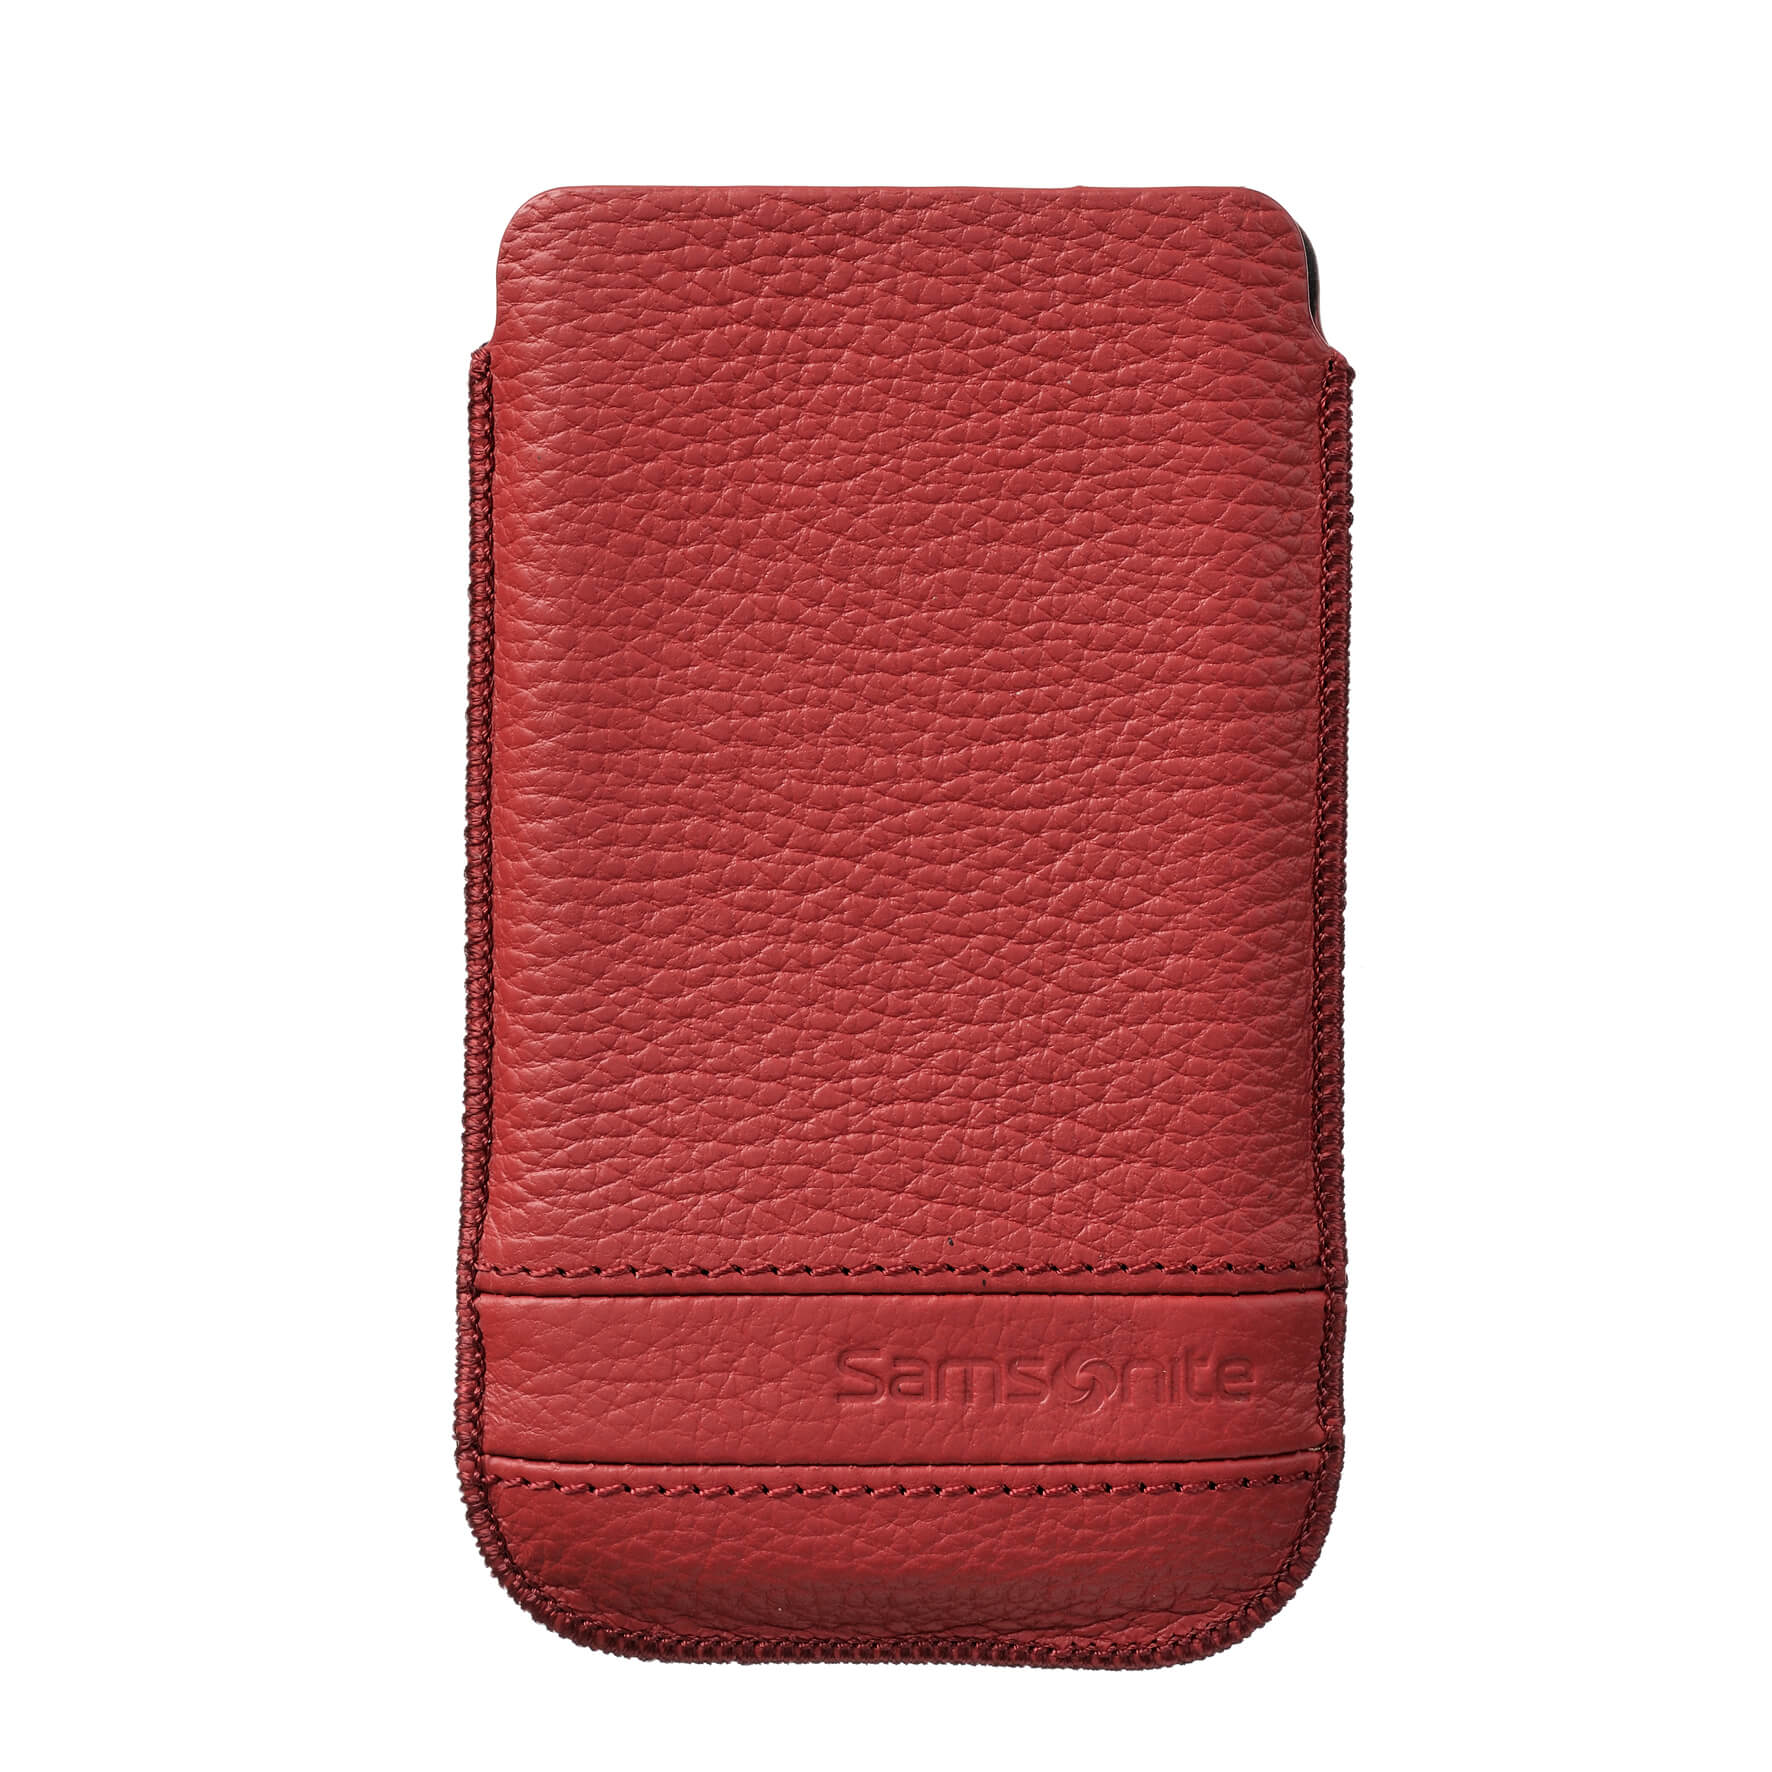 SAMSONITE Mobile Bag Classic Leather Medium Red